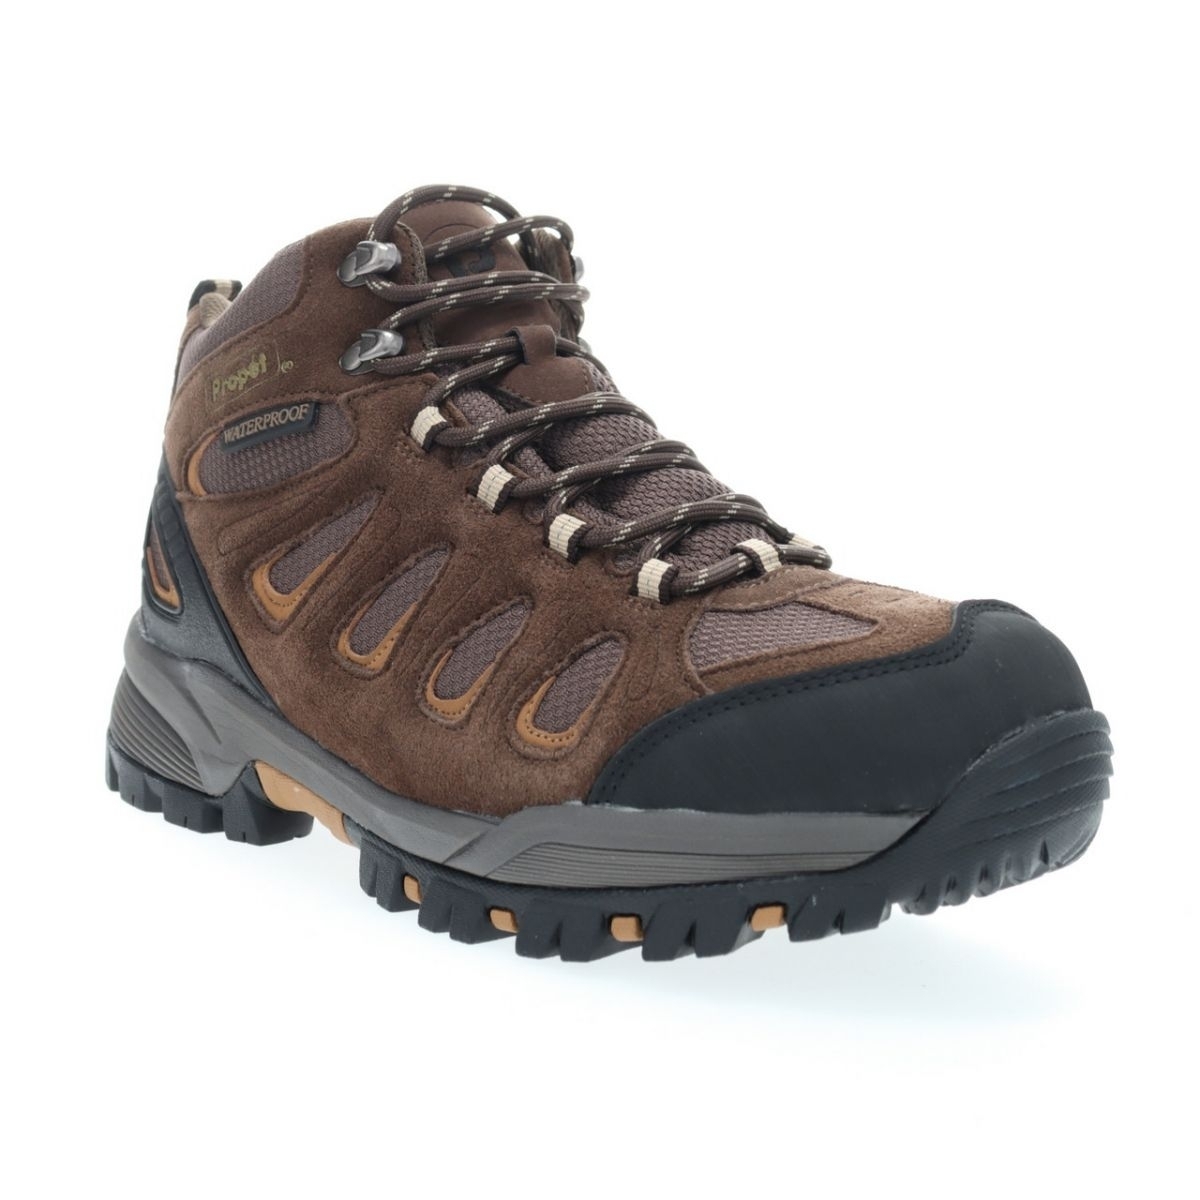 Propet Men's Ridge Walker Hiking Boot Brown - M3599BR 8 XX US Men BROWN - BROWN, 11